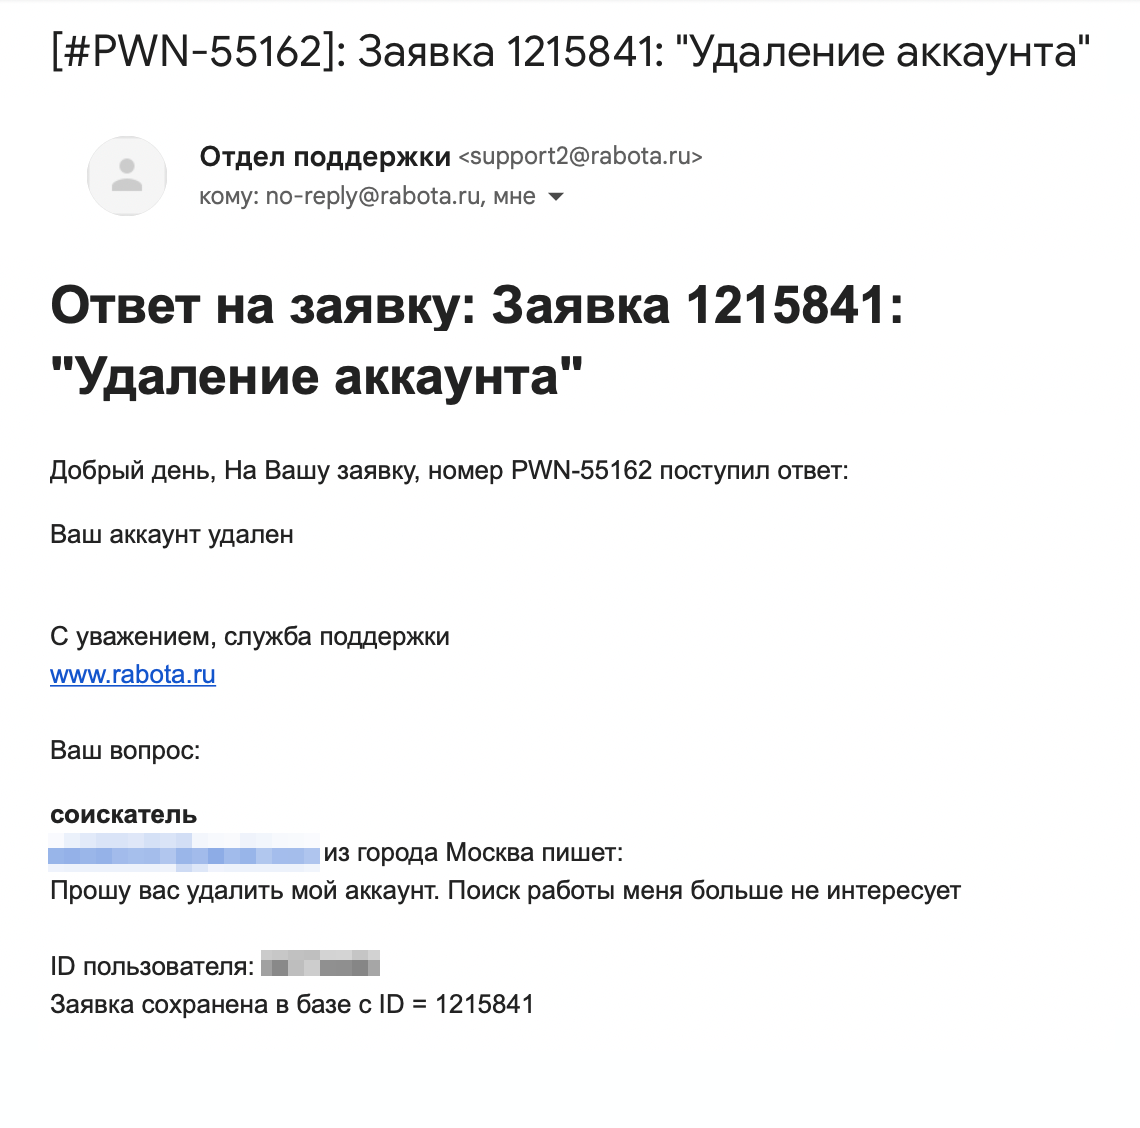 Инструкция, как удалить аккаунт на «Работа‑ру». Источник: rabota.ru